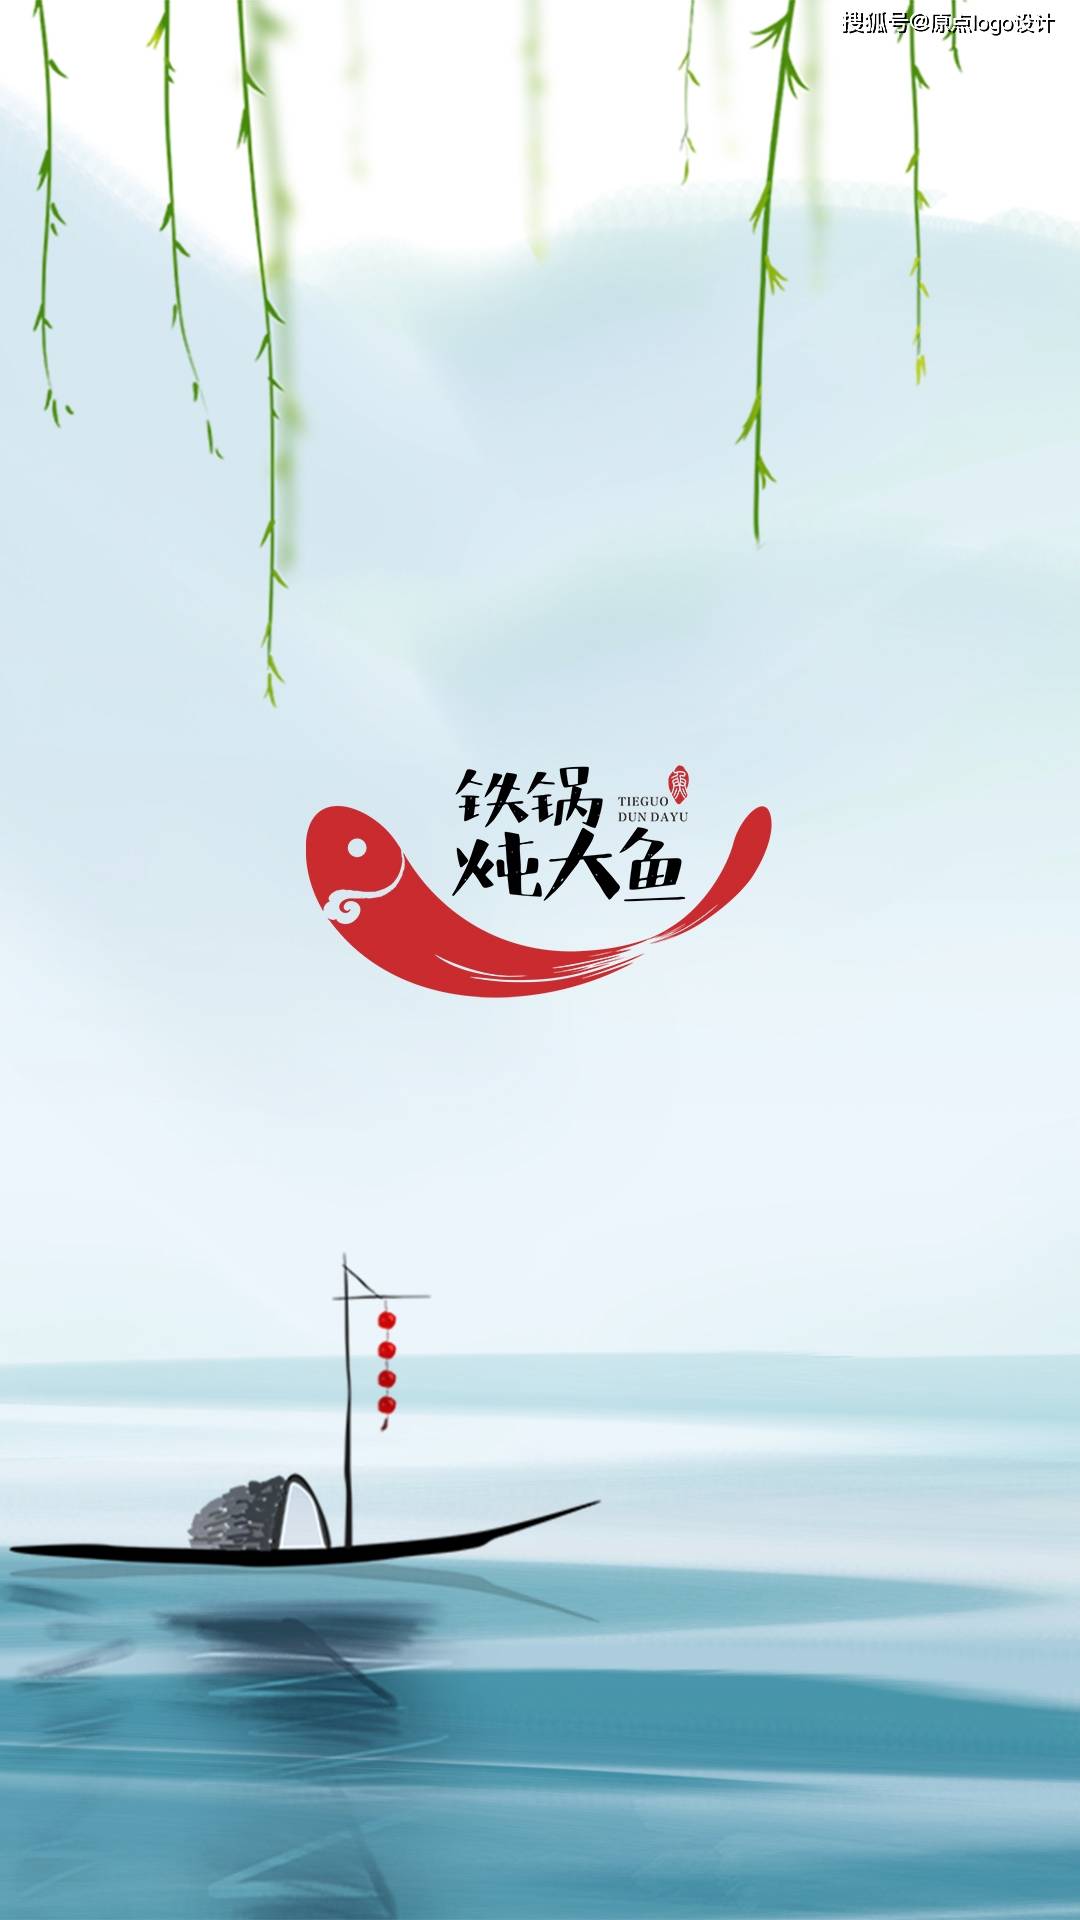 铁锅炖大鱼的logo要如何设计呢